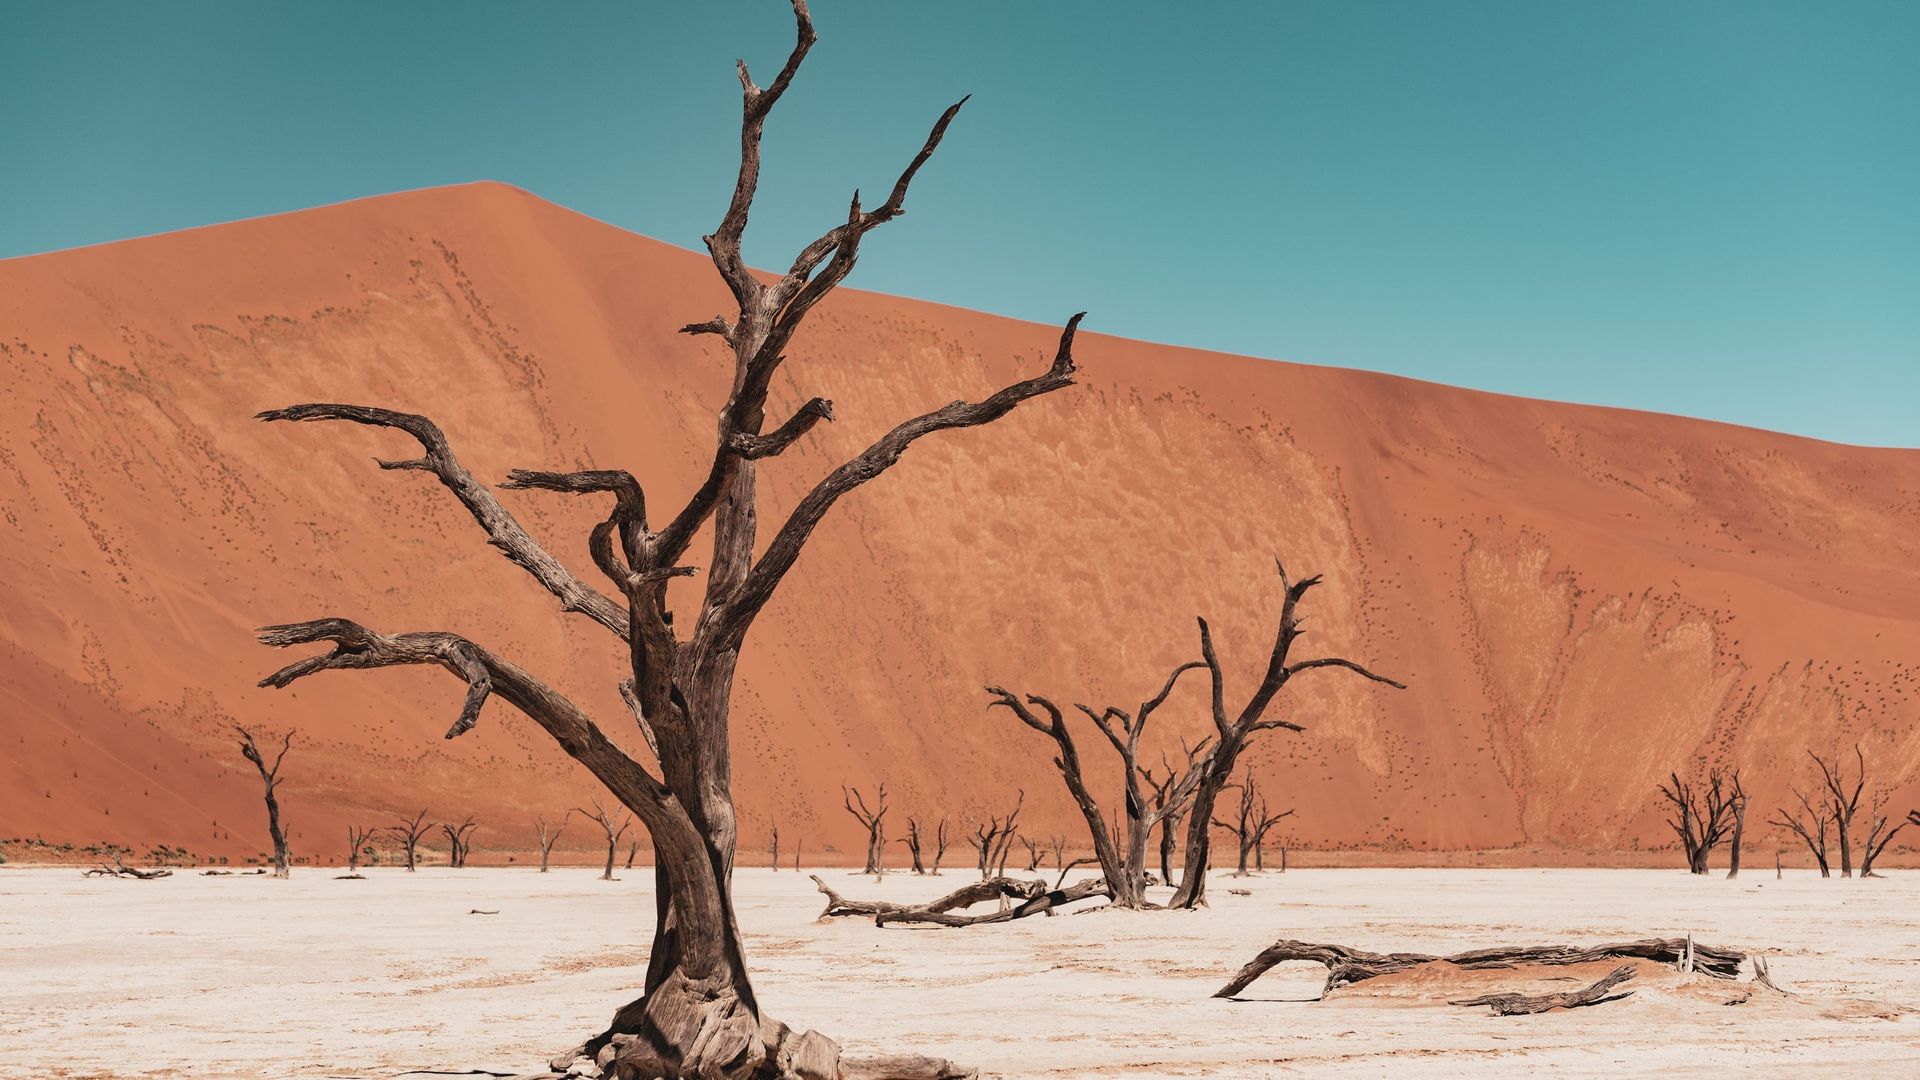 Sossusvlei en Namibie